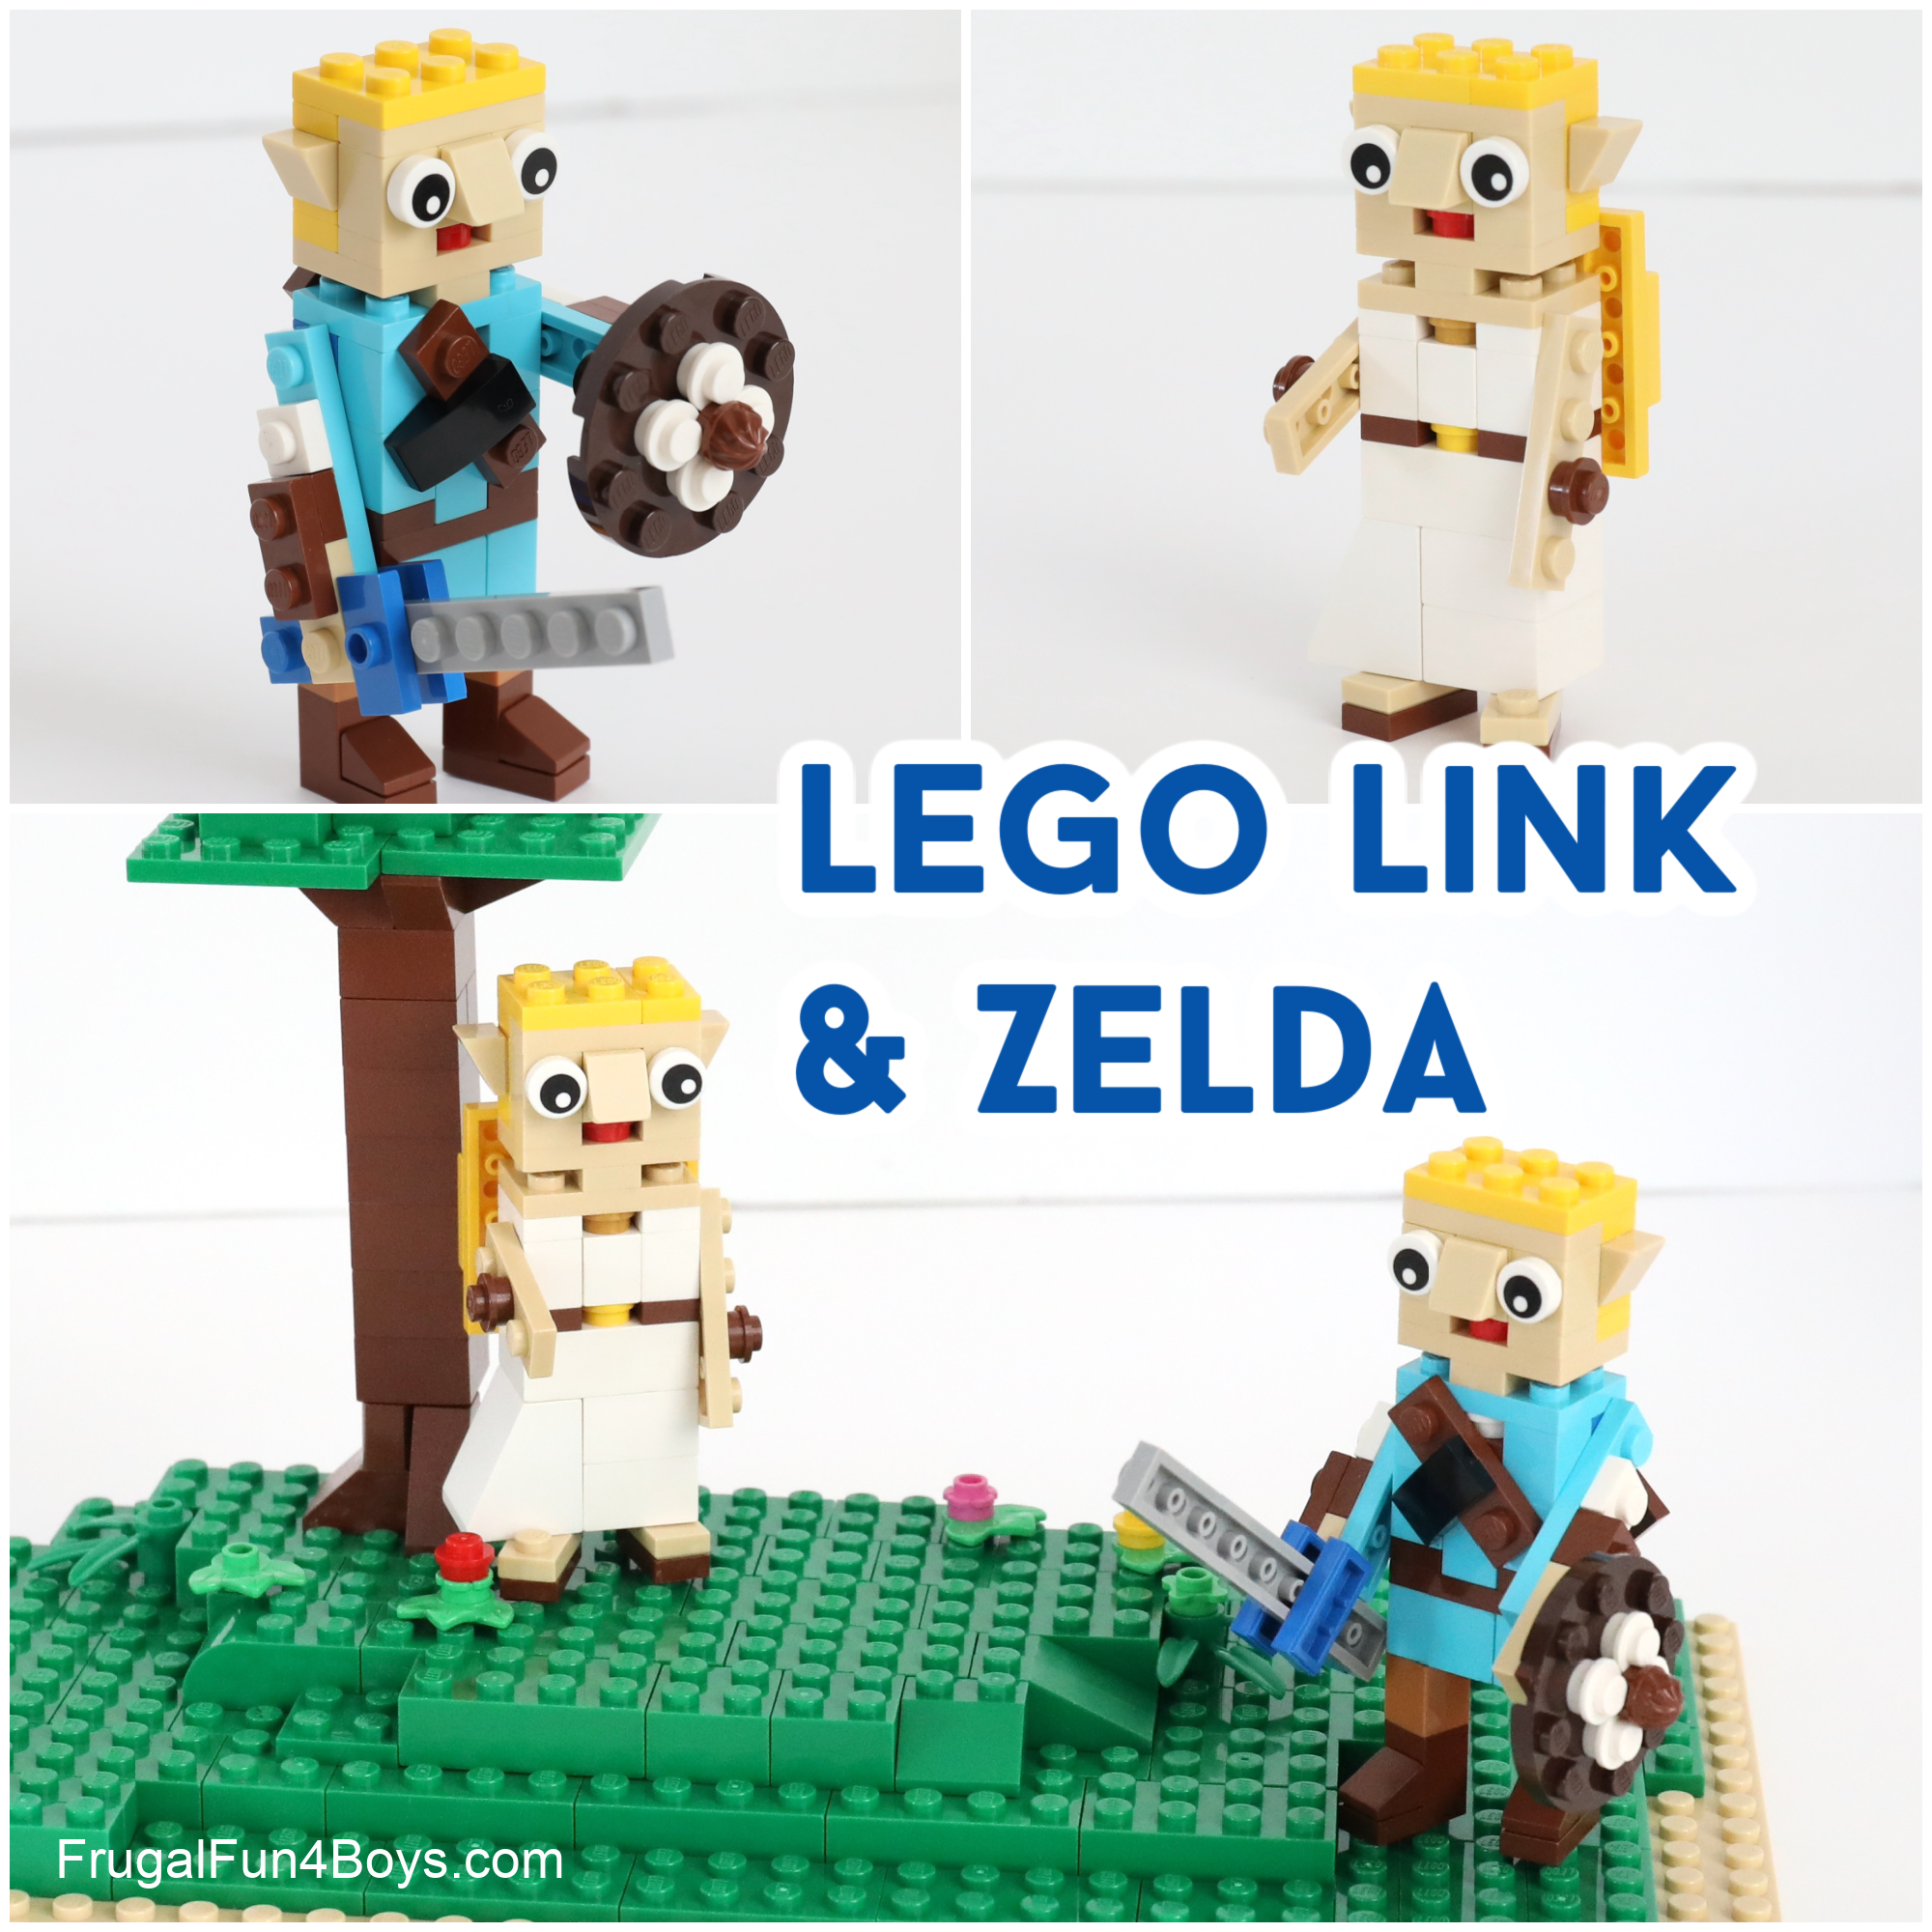 Lego Link and Zelda Characters